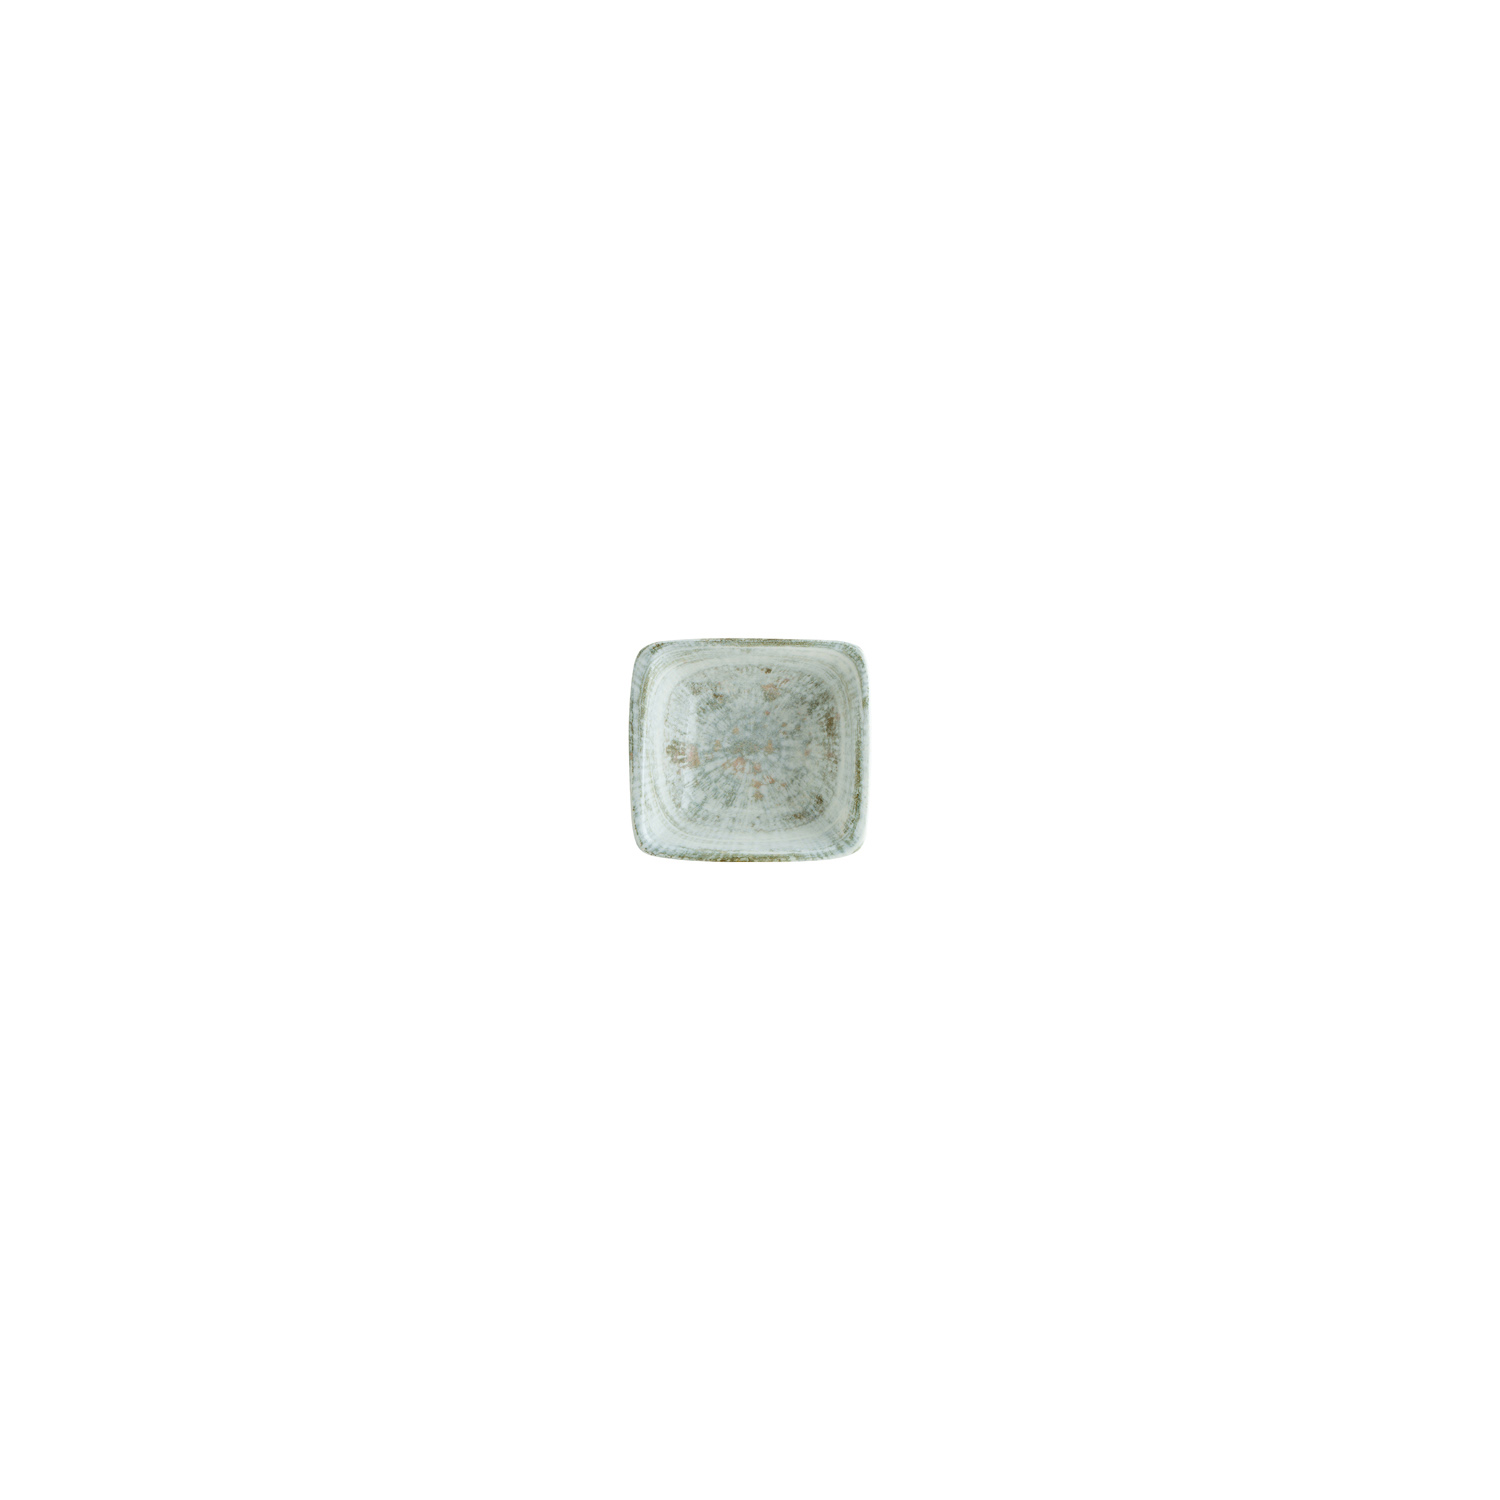 Odette Porcelain Ramekin Decorated Square 3.5″ x 3.25″ x 1.25″  3 oz. CasePack:24